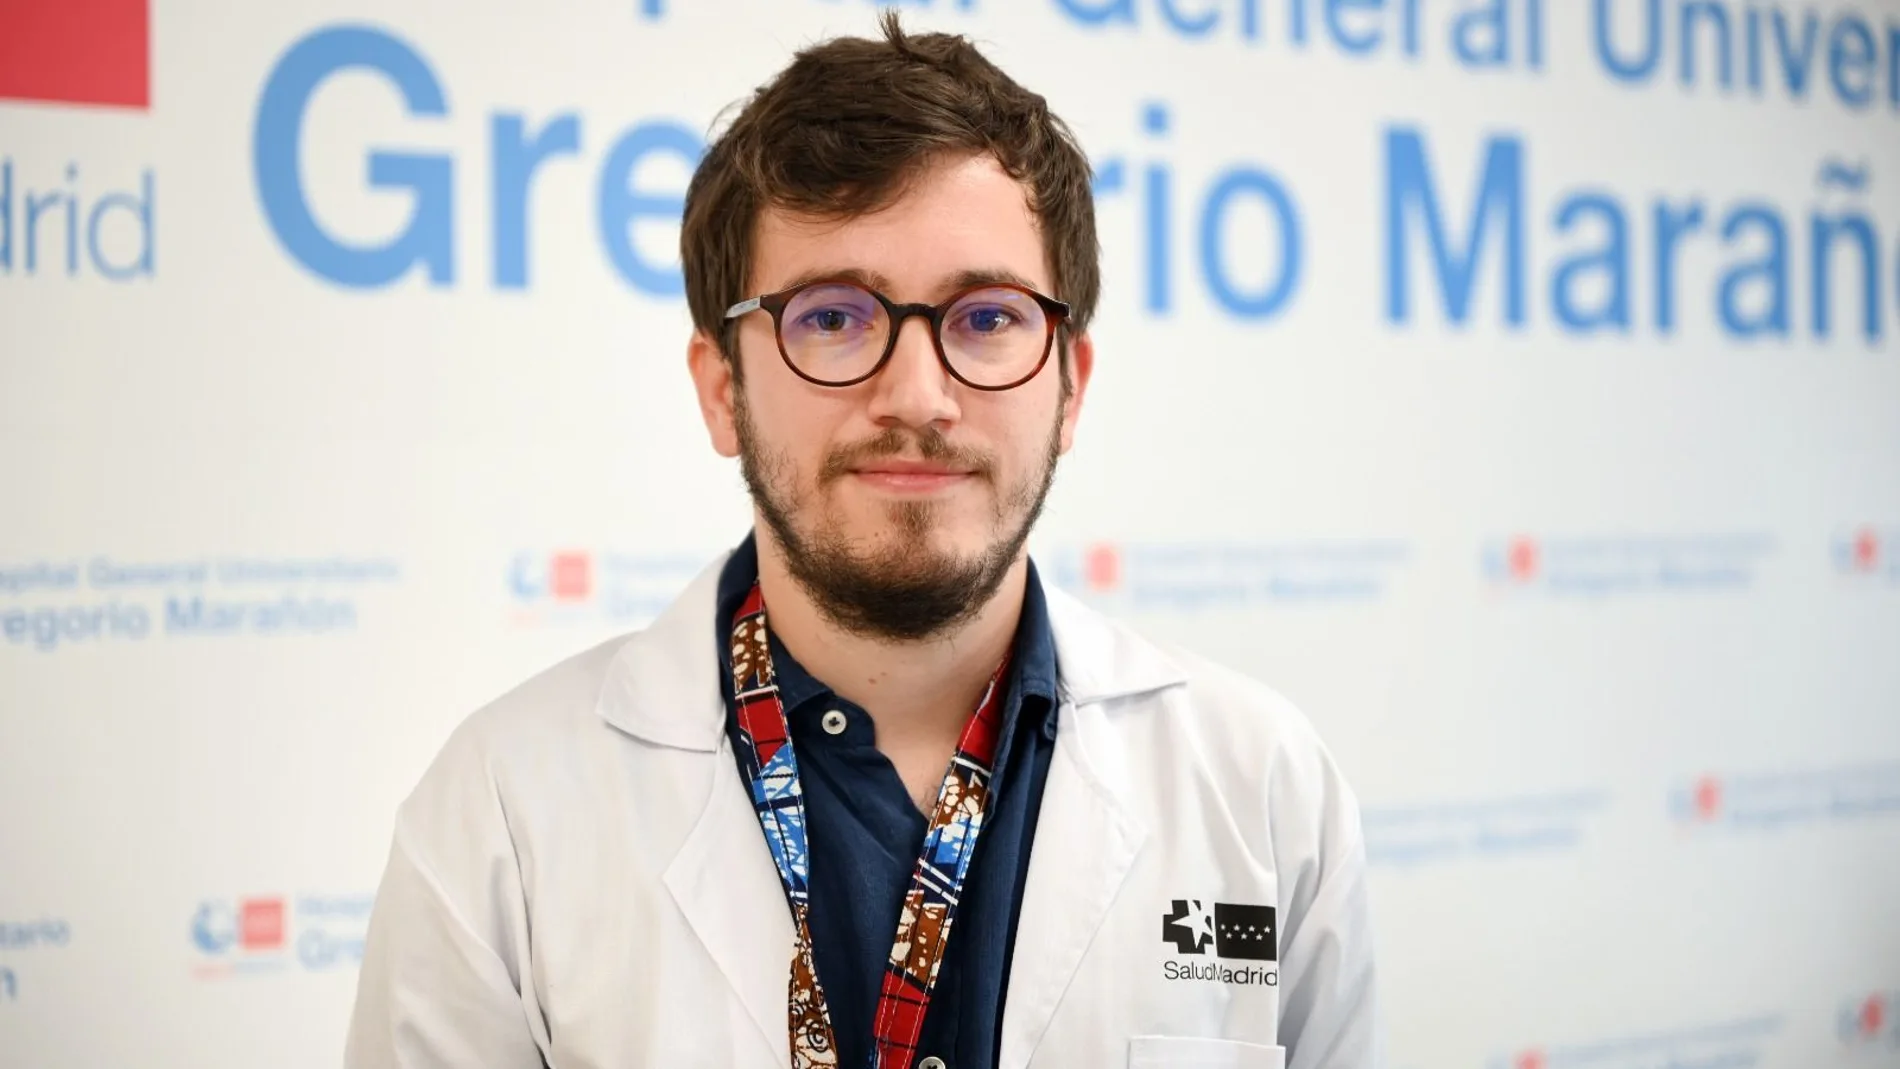 El doctor David Aguilera, infectólogo pediátrico del Hospital Gregorio Marañón, en Madrid